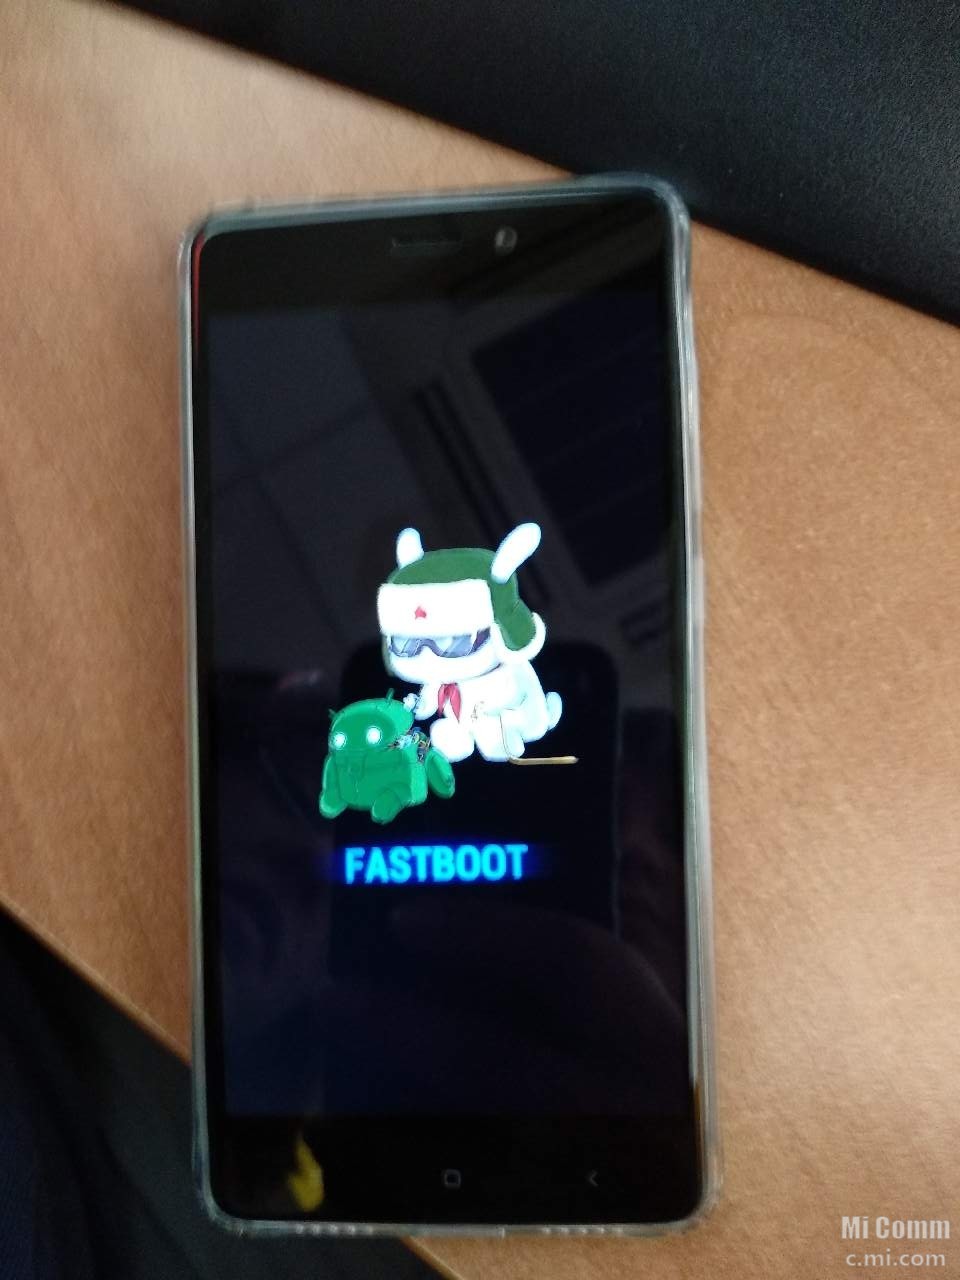 Fastboot redmi что делать. Xiaomi Redmi Note 8 Pro Fastboot. Xiaomi Redmi Note 7 Fastboot. Fastboot Xiaomi Redmi 4x. Fastboot Xiaomi 8t.